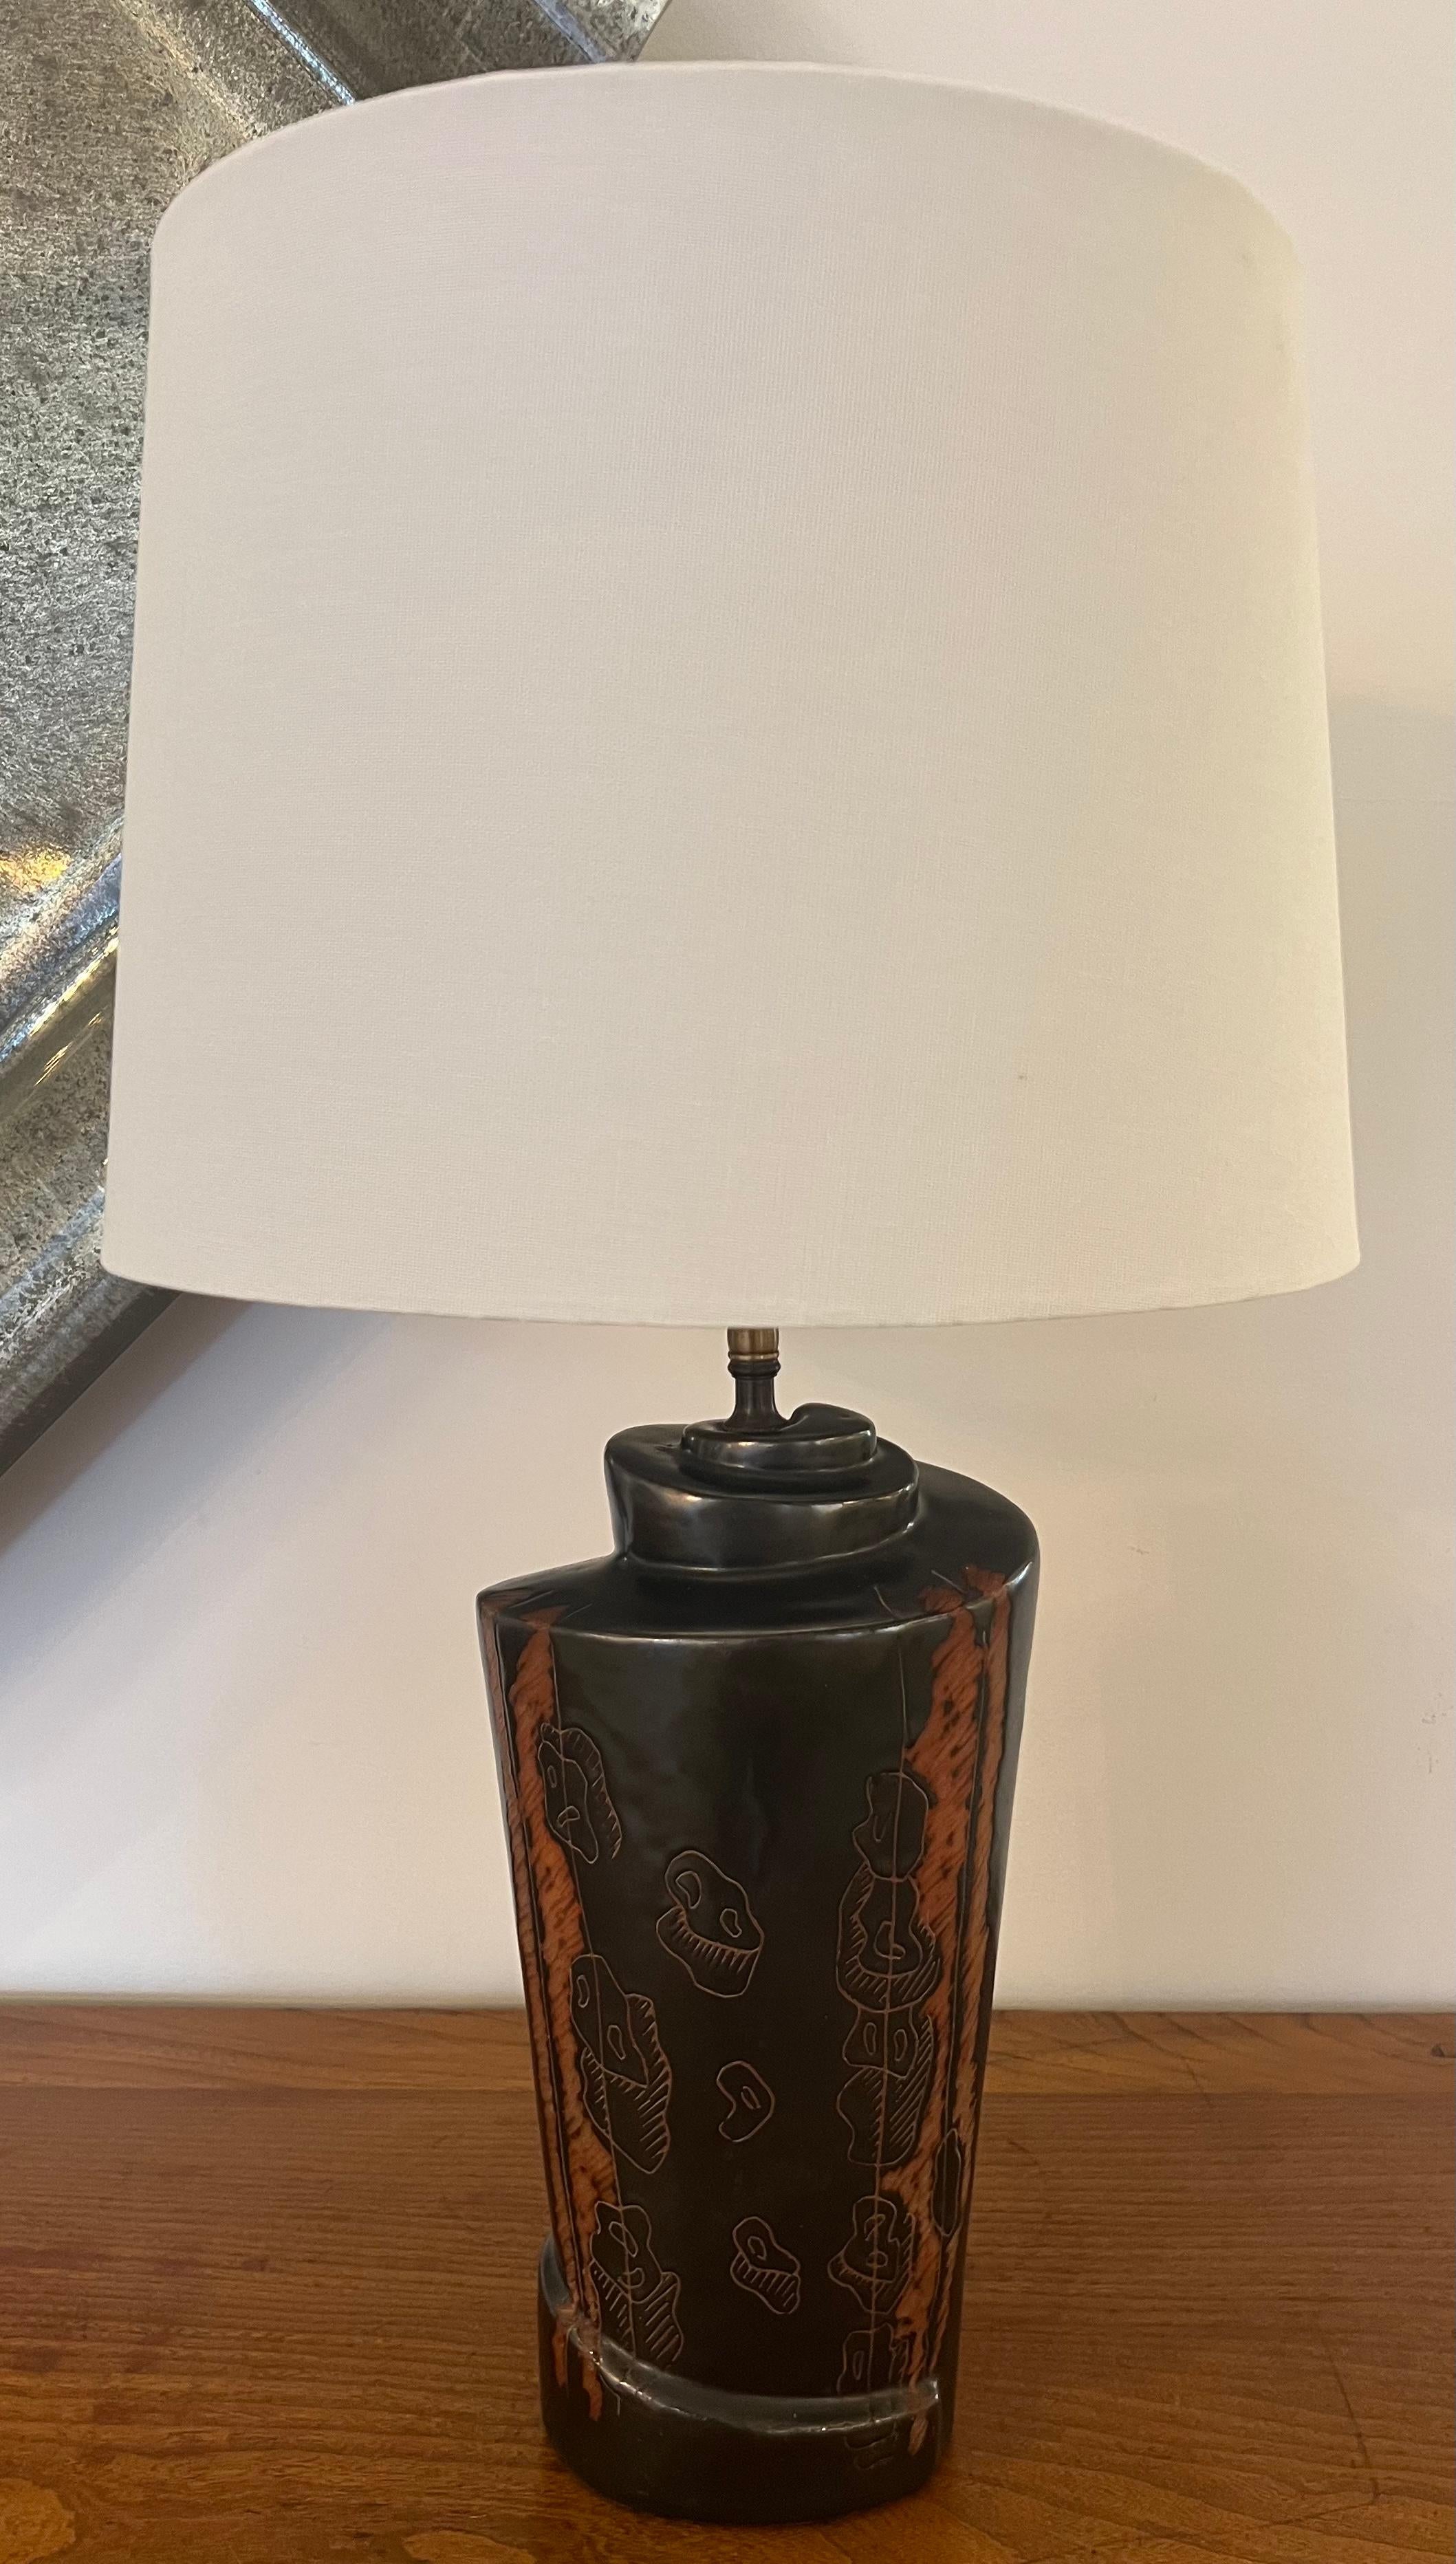 Paire de lampes de table originales en poterie d'art de la célèbre artiste américaine Marianna con Allesch. Signé. Recâblage avec doubles prises en laiton vieilli et cordons en tissu marron. Les corps en céramique mesurent 13 pouces de haut et sont